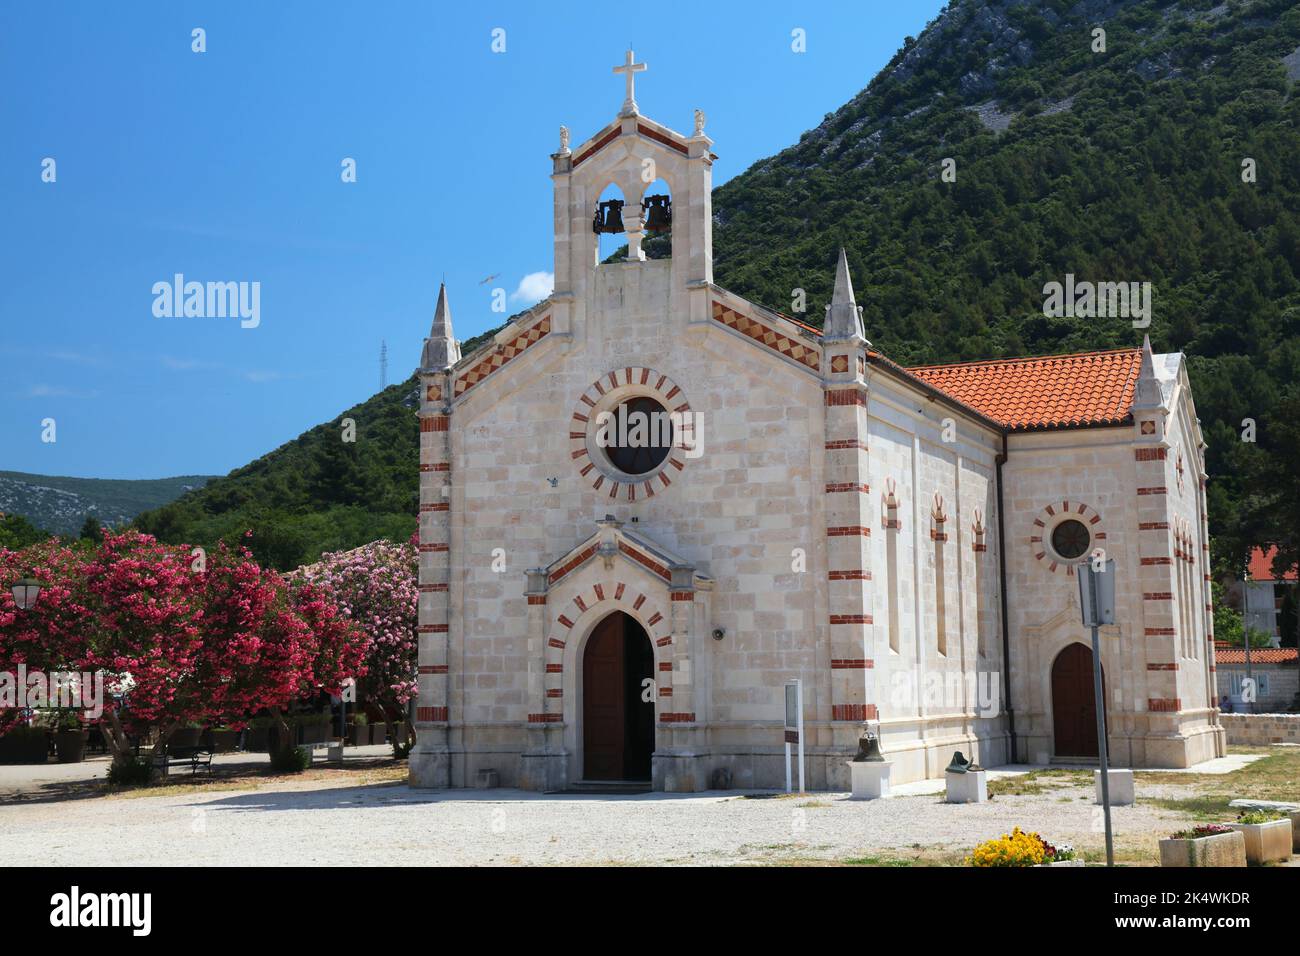 Ston, Croazia. La chiesa della città vecchia e gli alberi di oleandro in fiore. Foto Stock